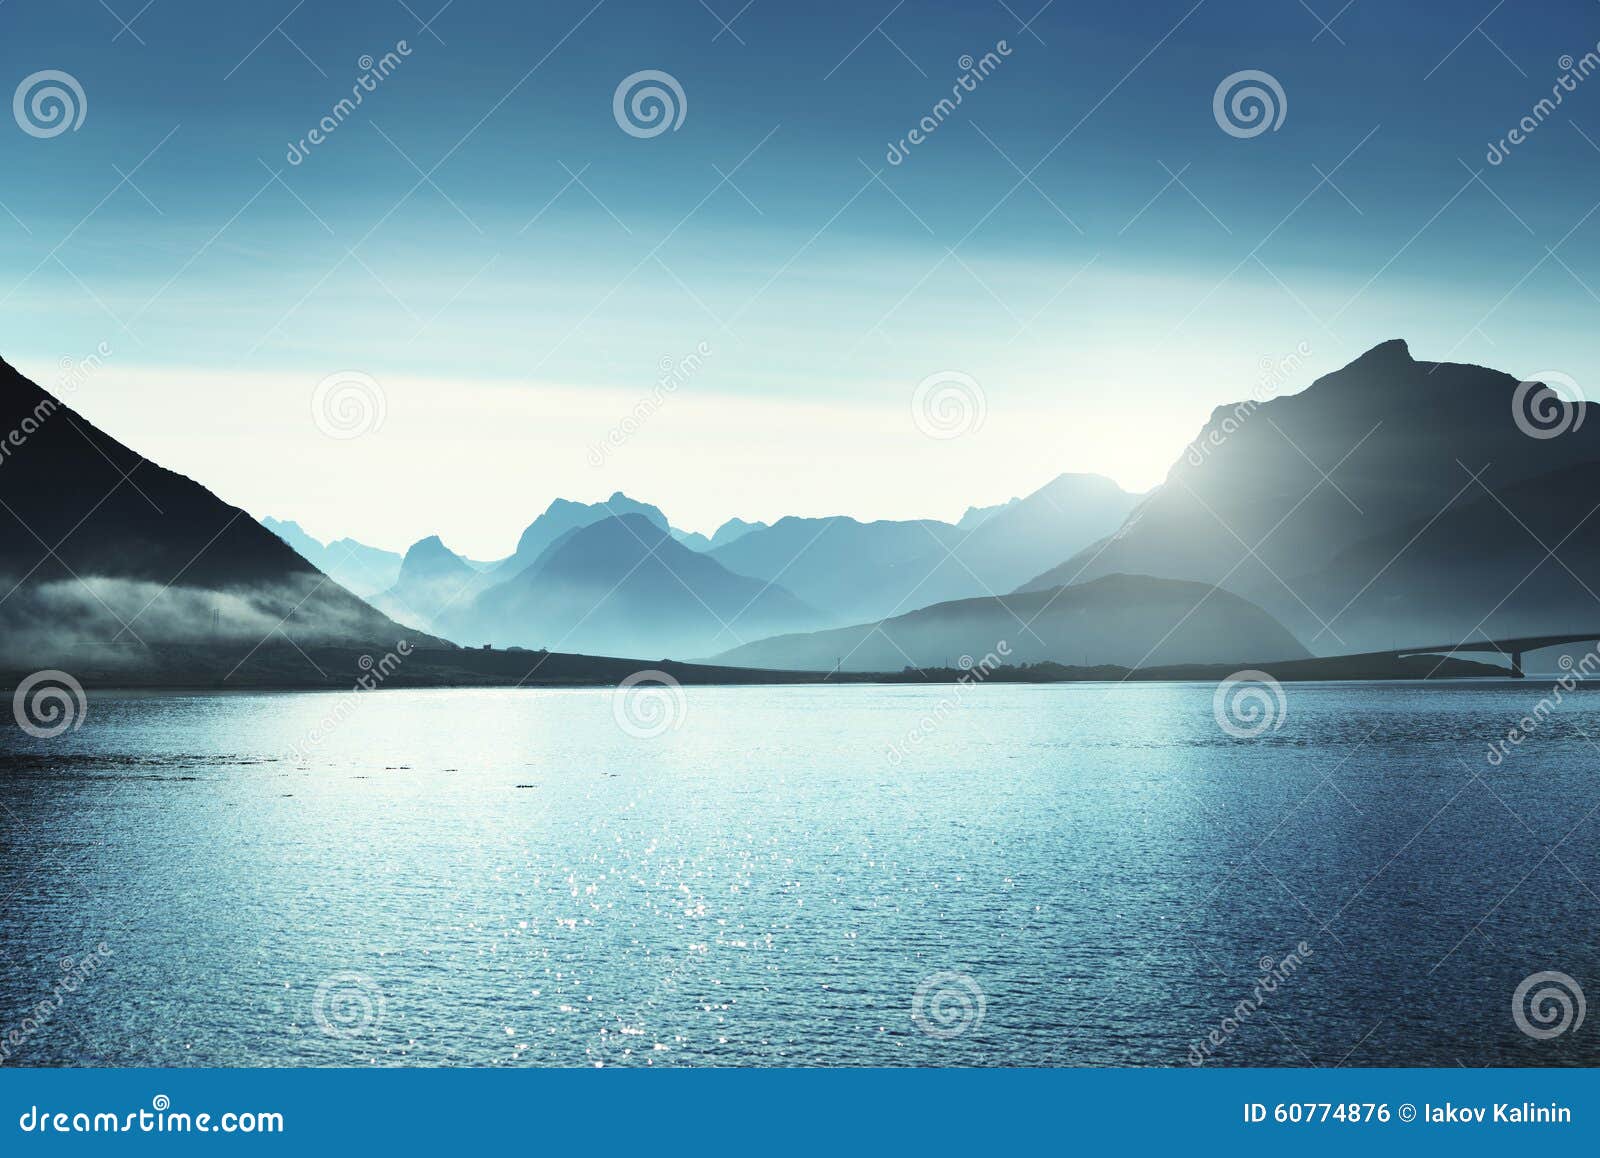 mountains on lofoten islands, norway